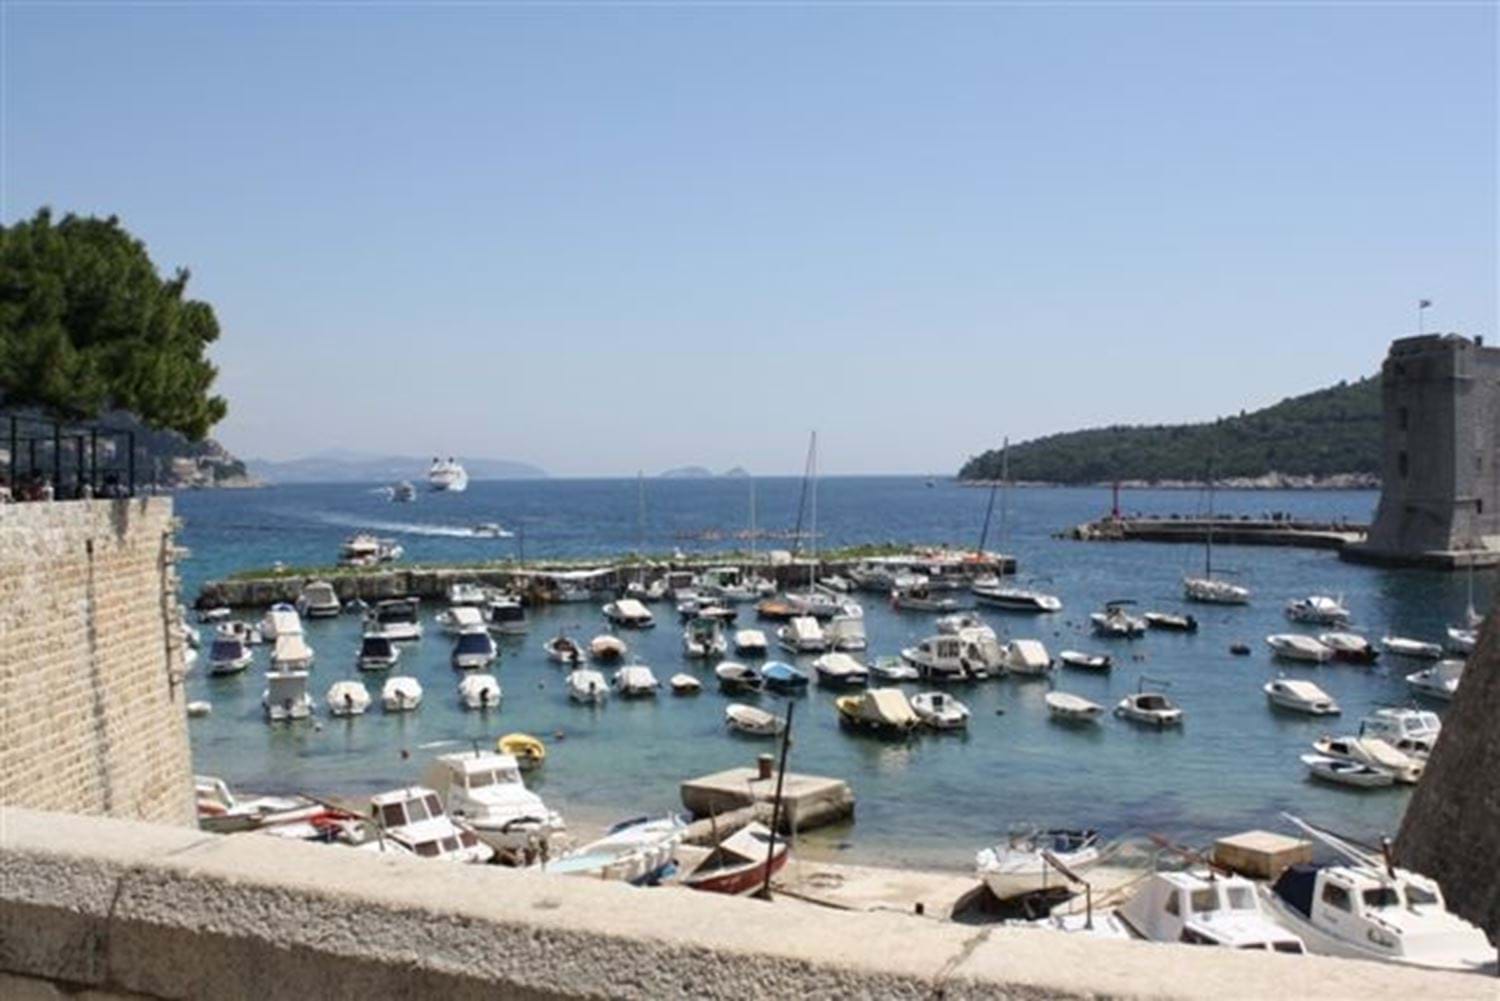 De jachthaven van Dubrovnik